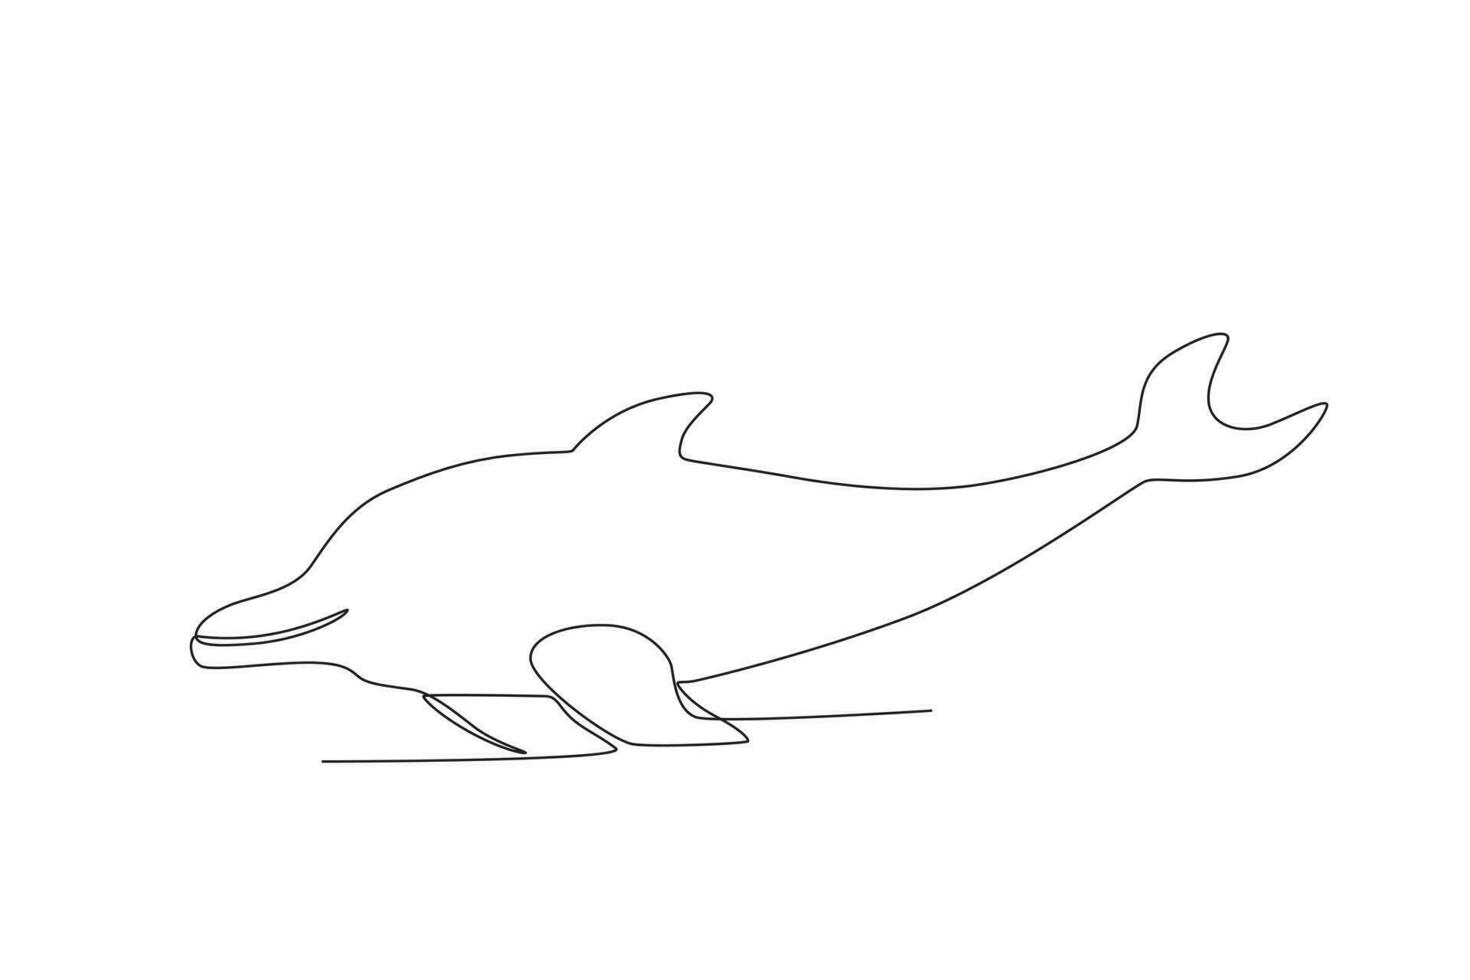 solteiro 1 linha desenhando do uma golfinho. contínuo linha desenhar Projeto gráfico vetor ilustração.